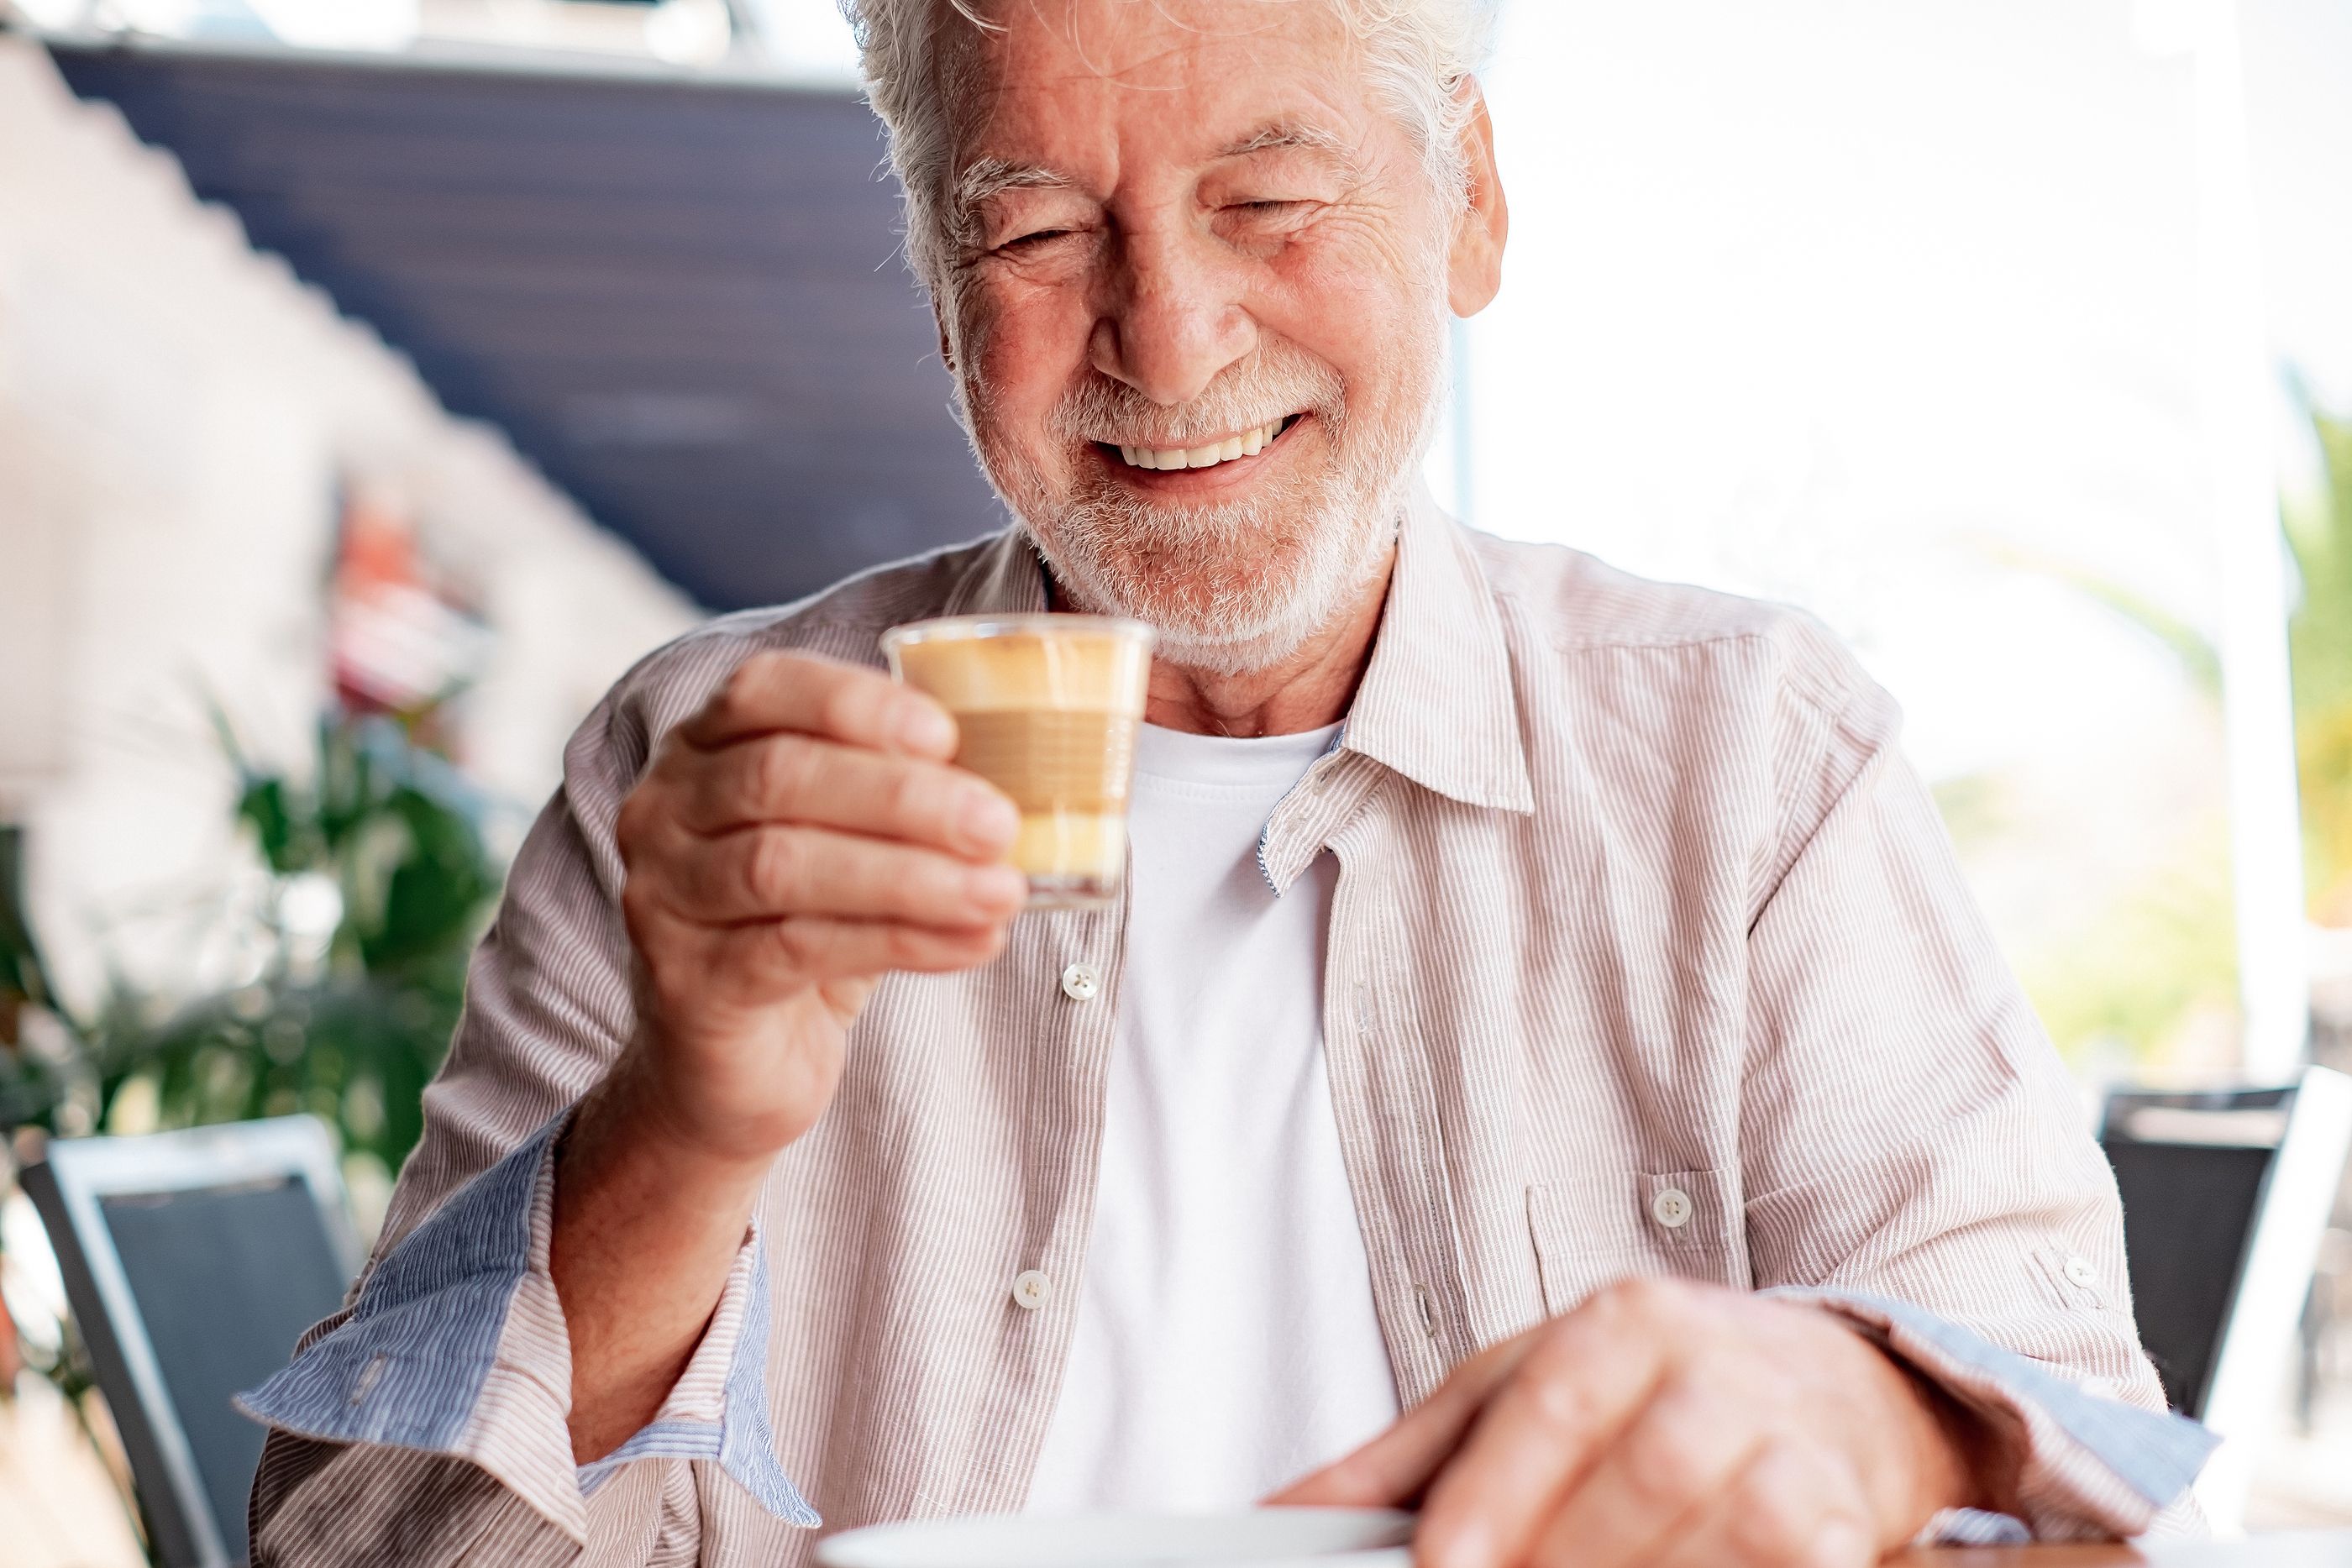 Un compuesto presente el café puede mejorar la calidad de vida en el envejecimiento